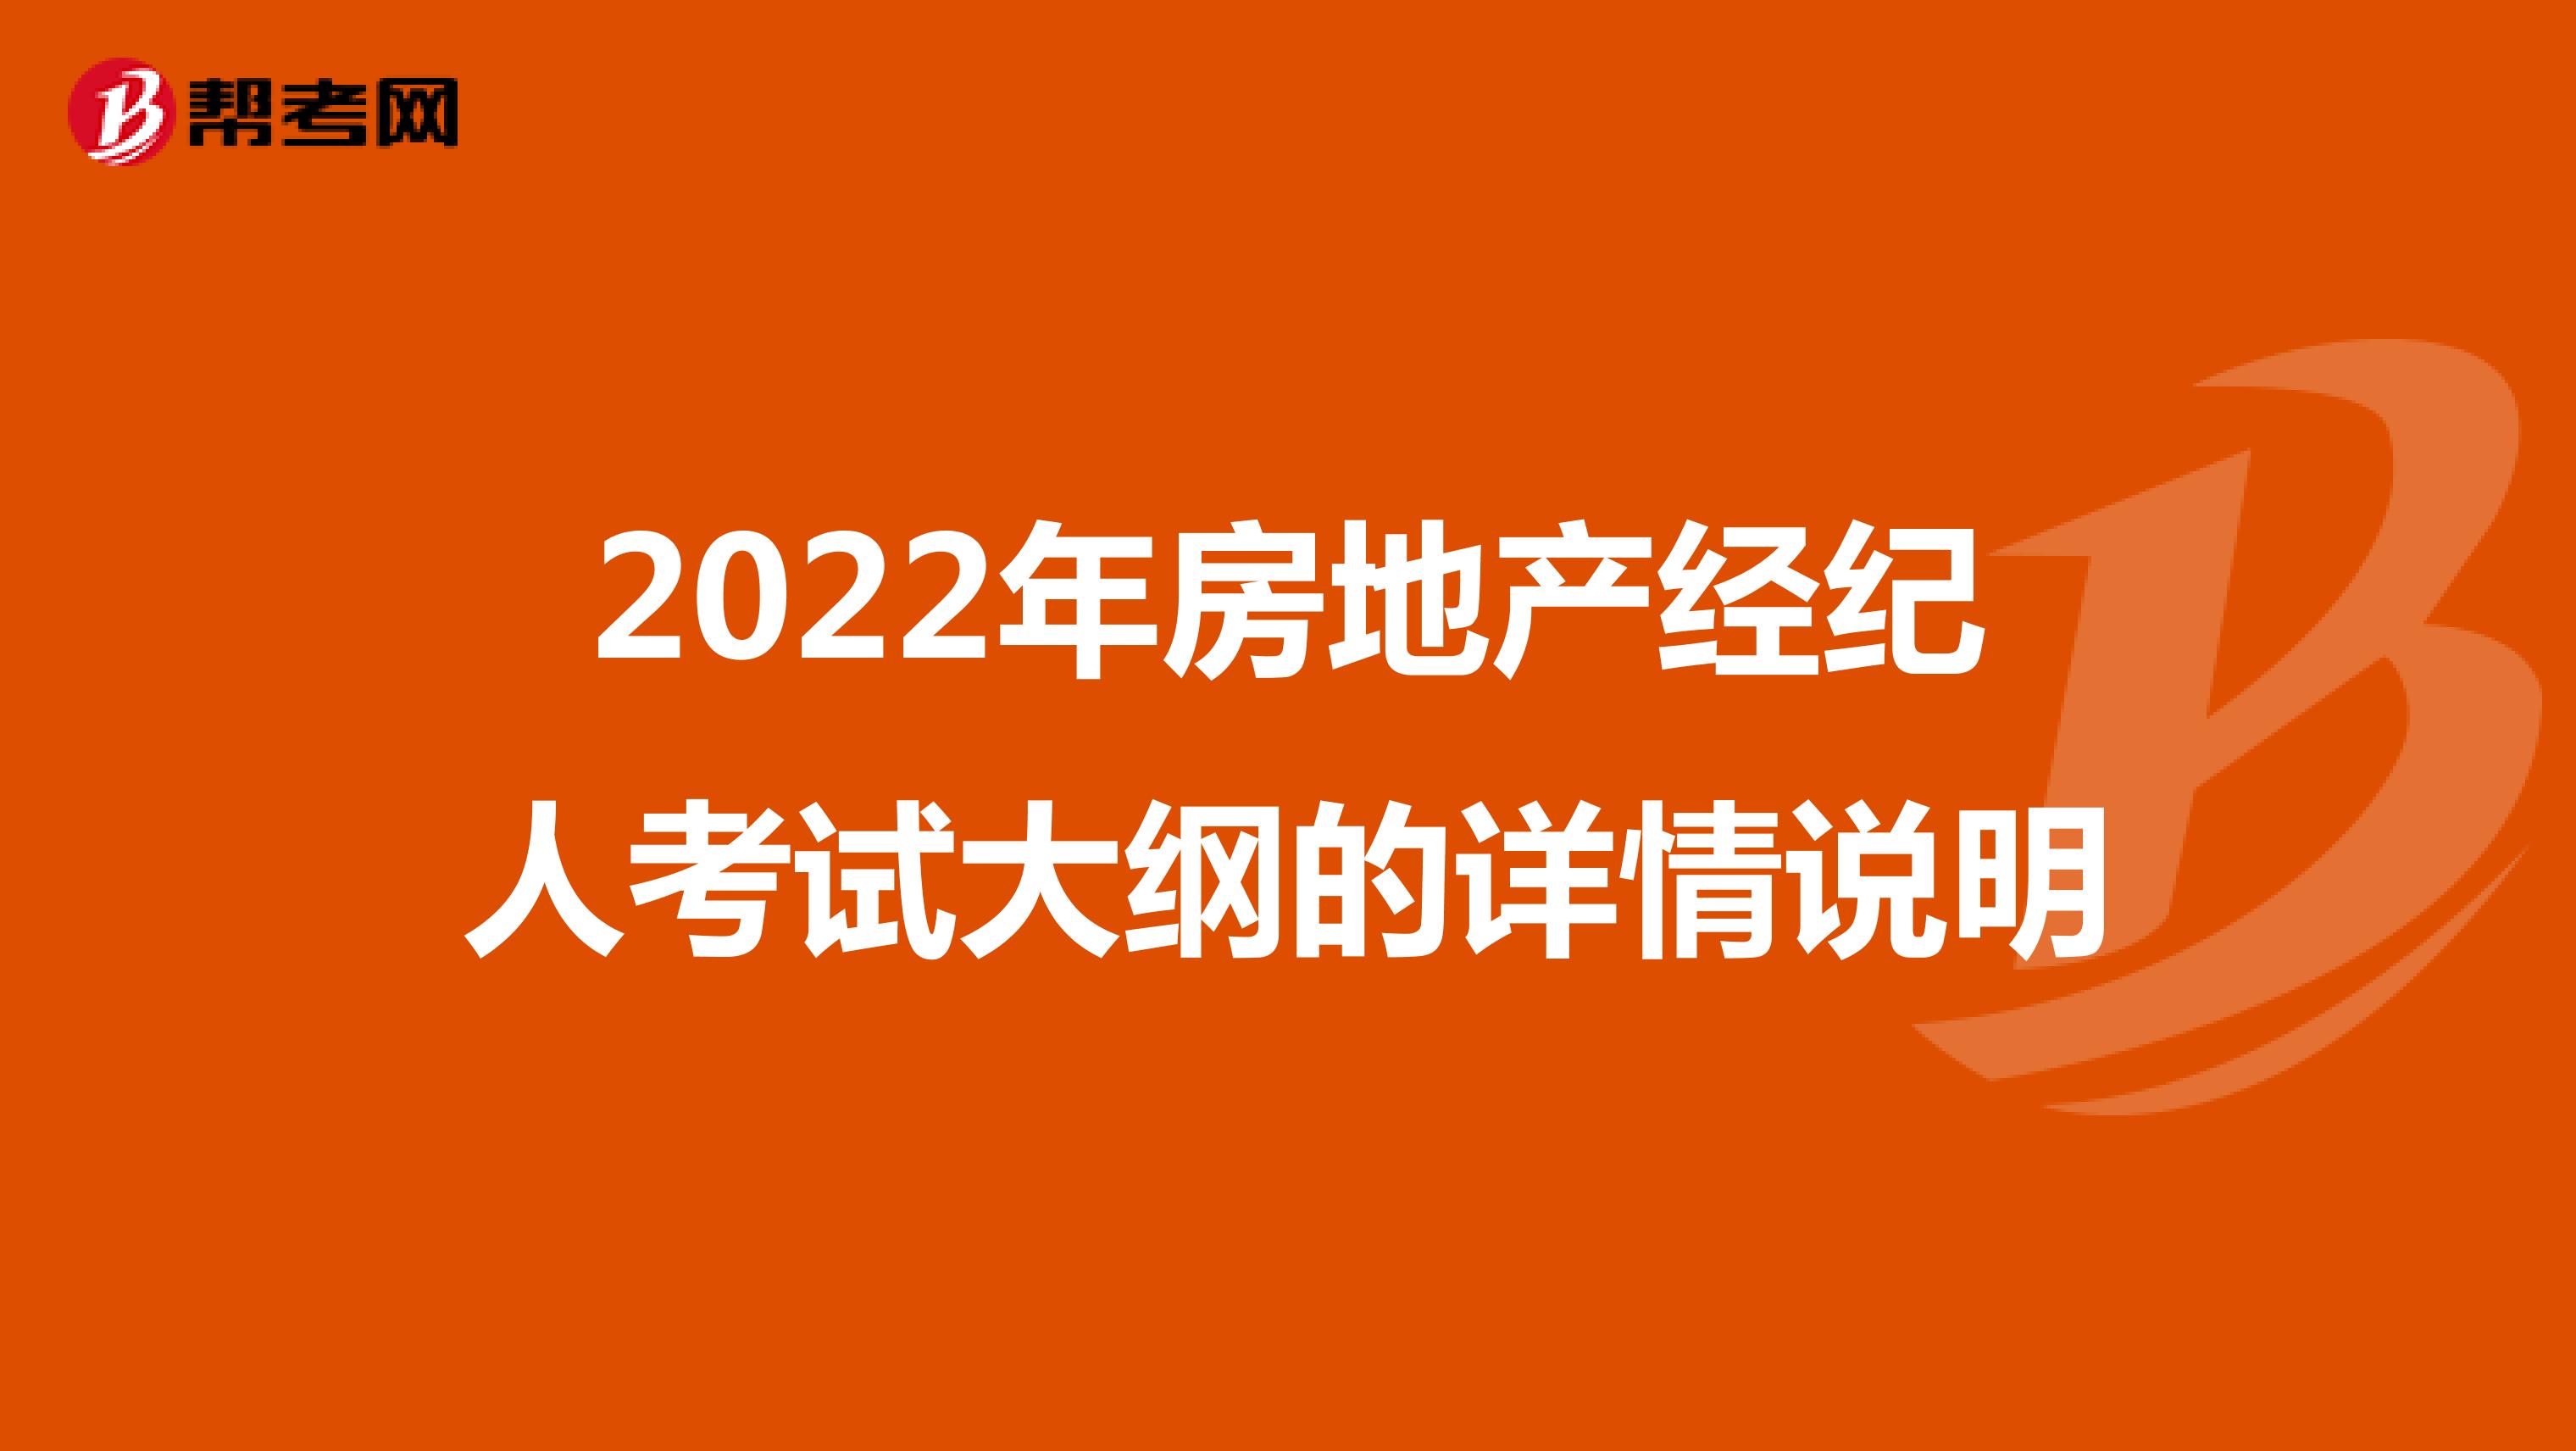 2022年房地产经纪人考试大纲的详情说明